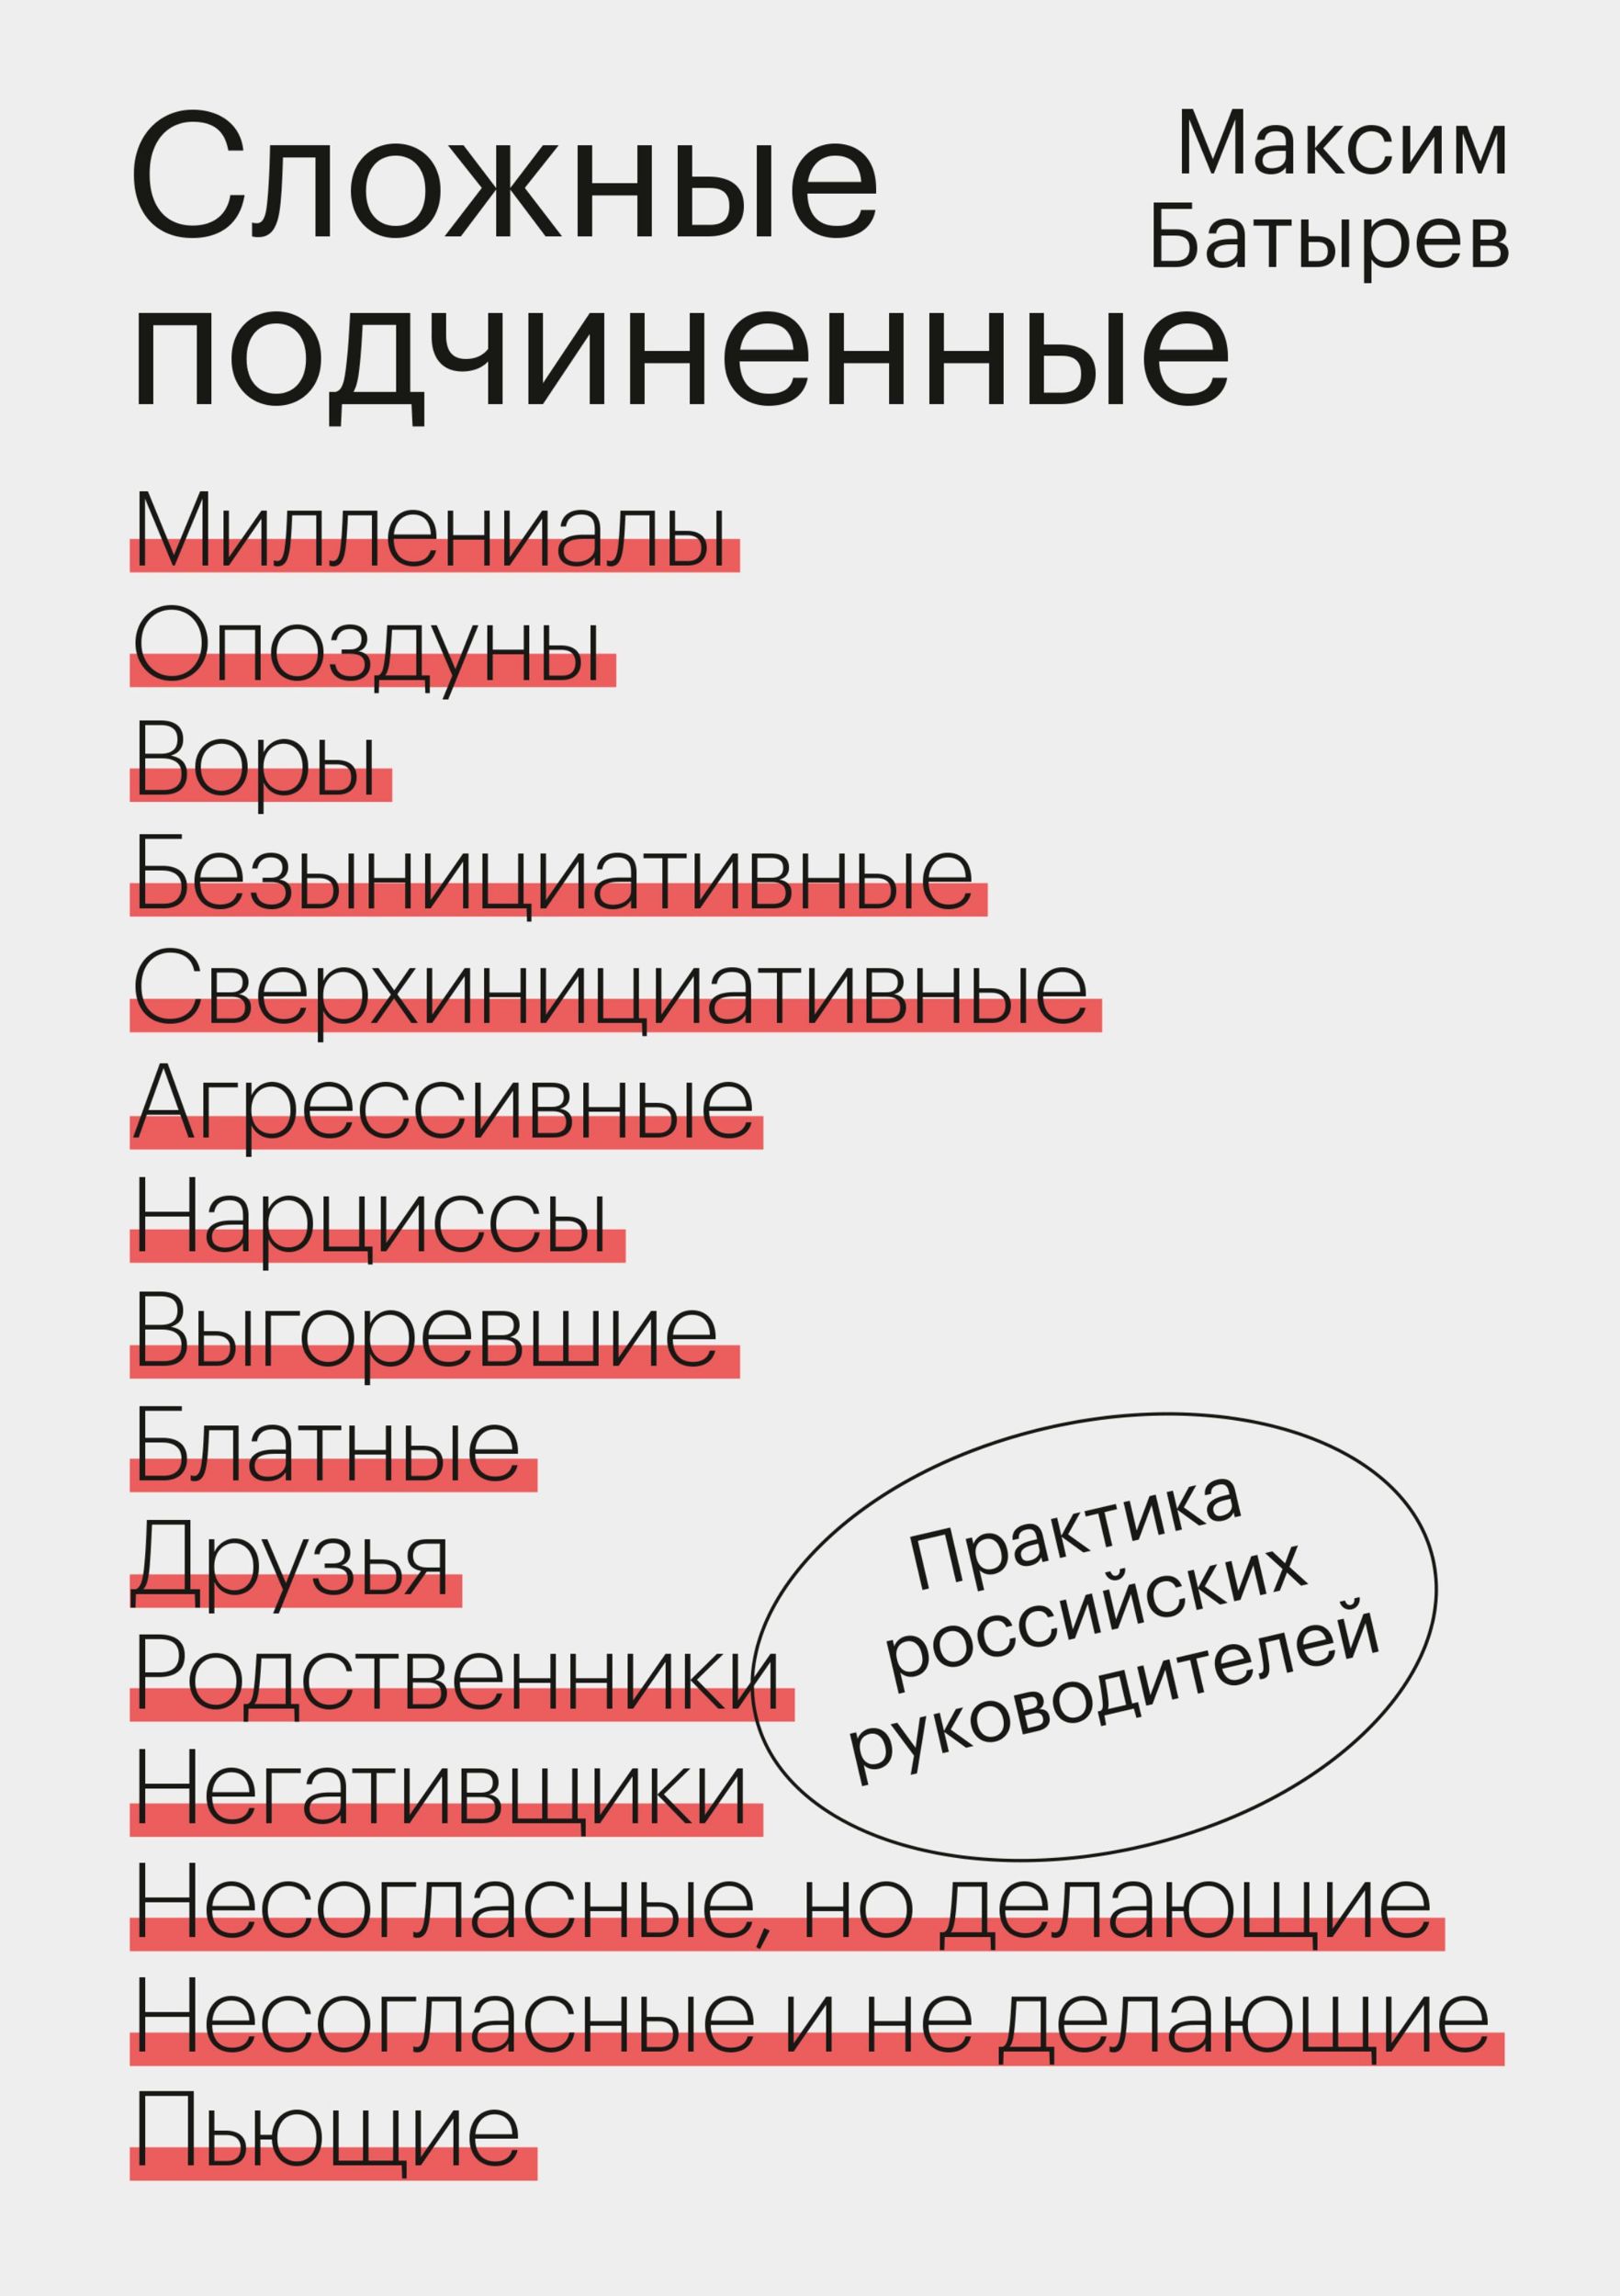 Обложка книги Максима Батырева «Сложные подчиненные»